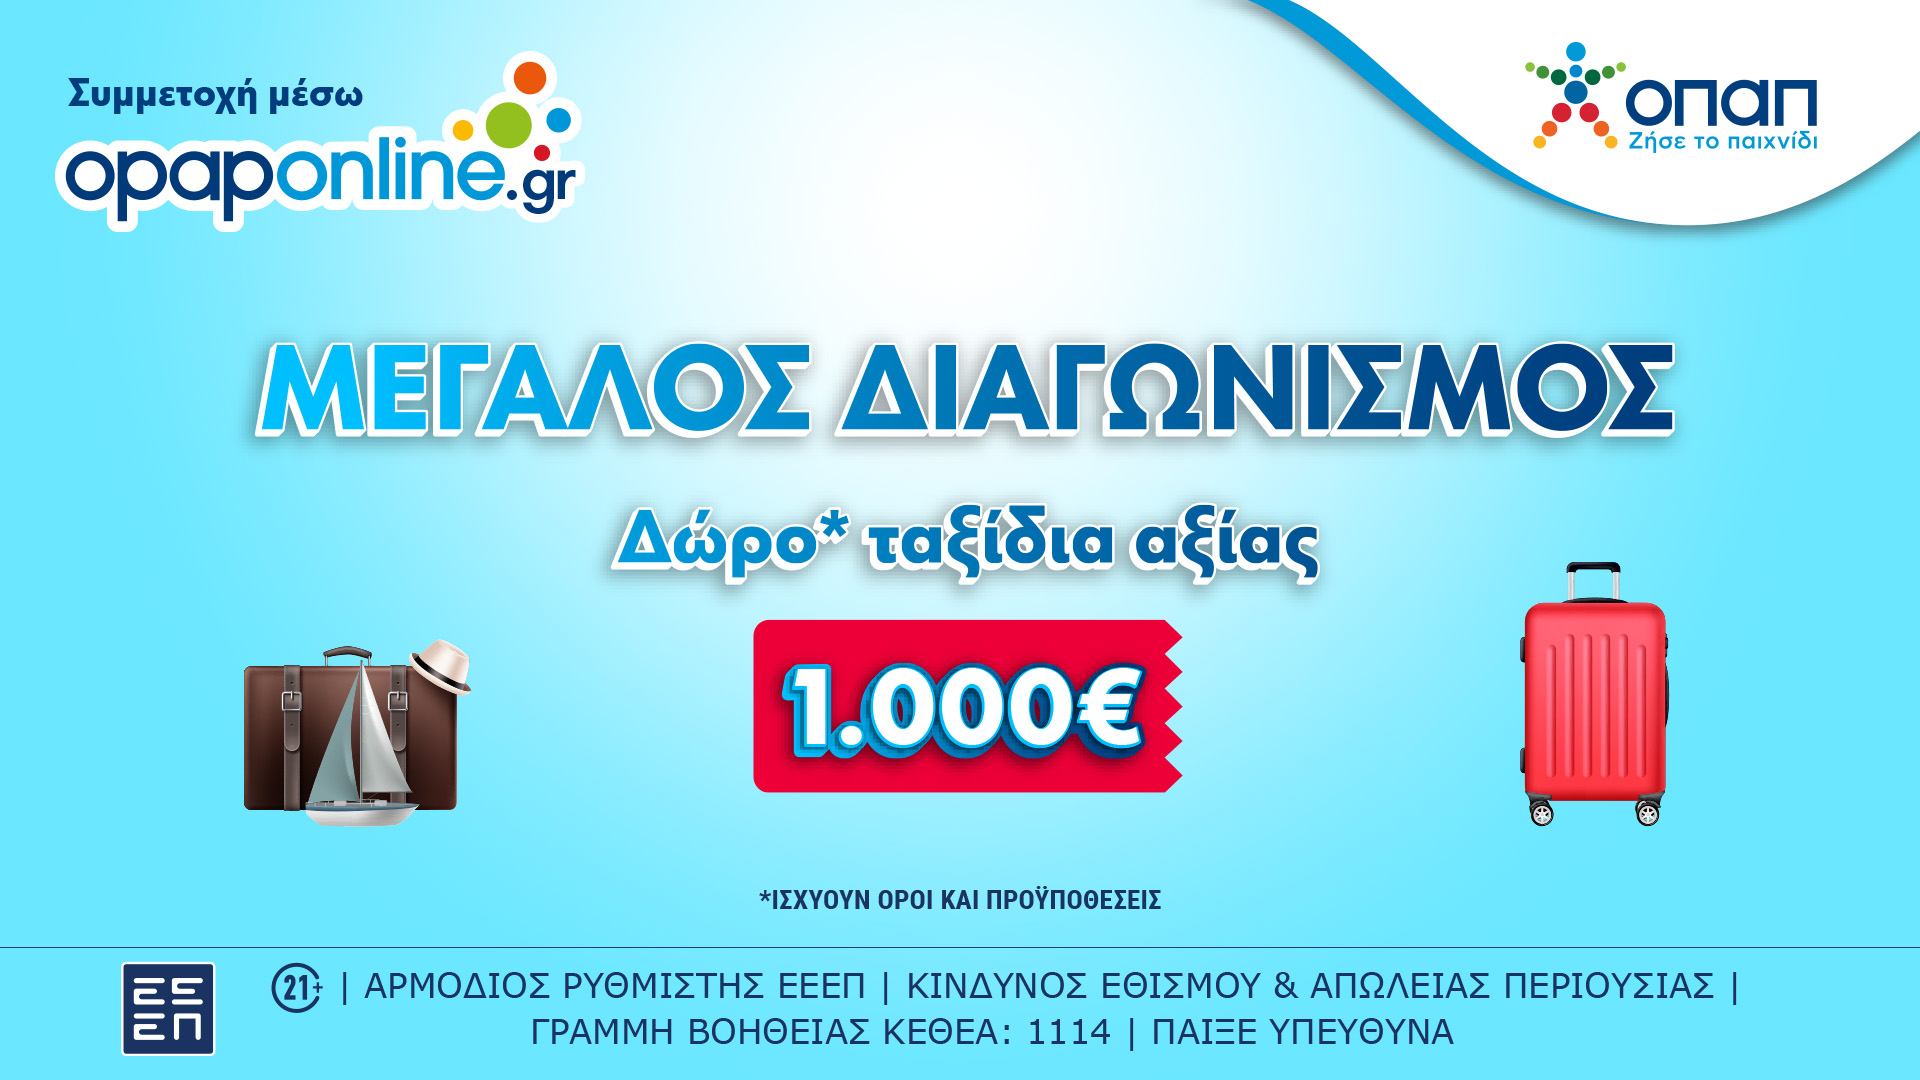 Δωρεάν ταξίδια αξίας 1.000 ευρώ στο opaponline.gr – Έως την Κυριακή οι συμμετοχές